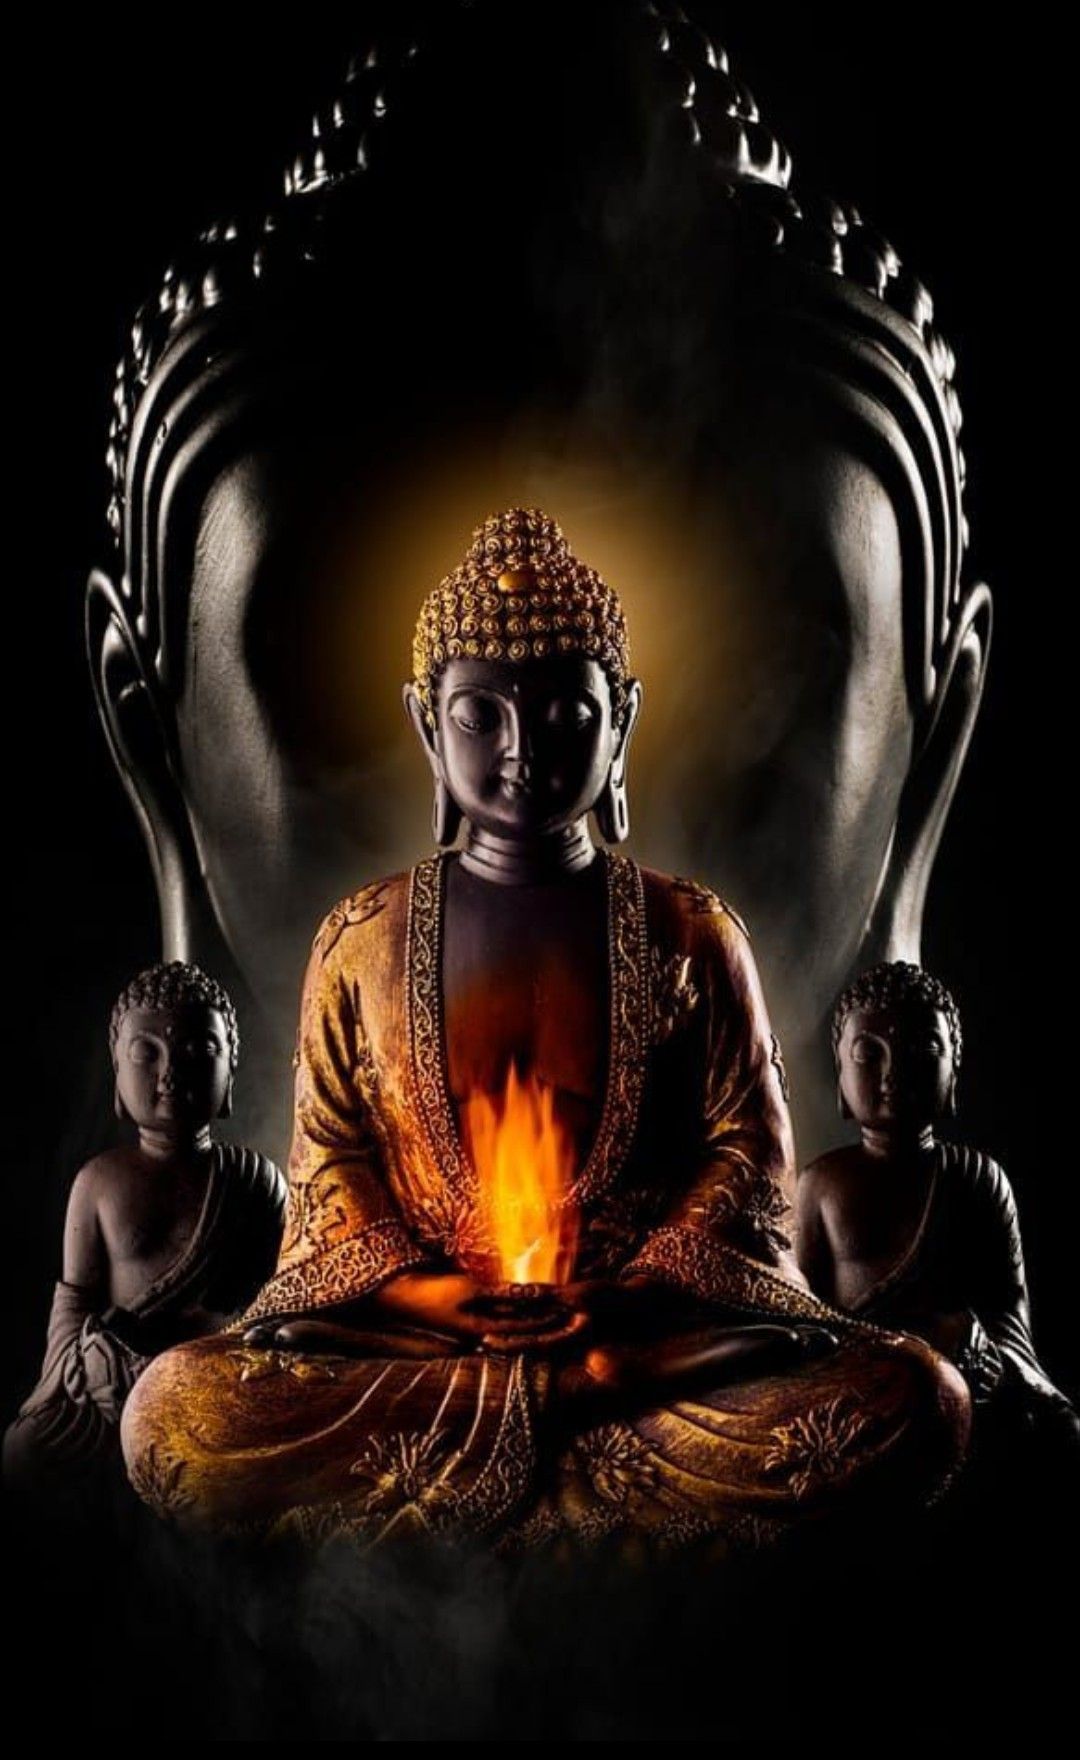 Khám phá vẻ đẹp tuyệt vời với hình nền Phật pháp cho iPhone